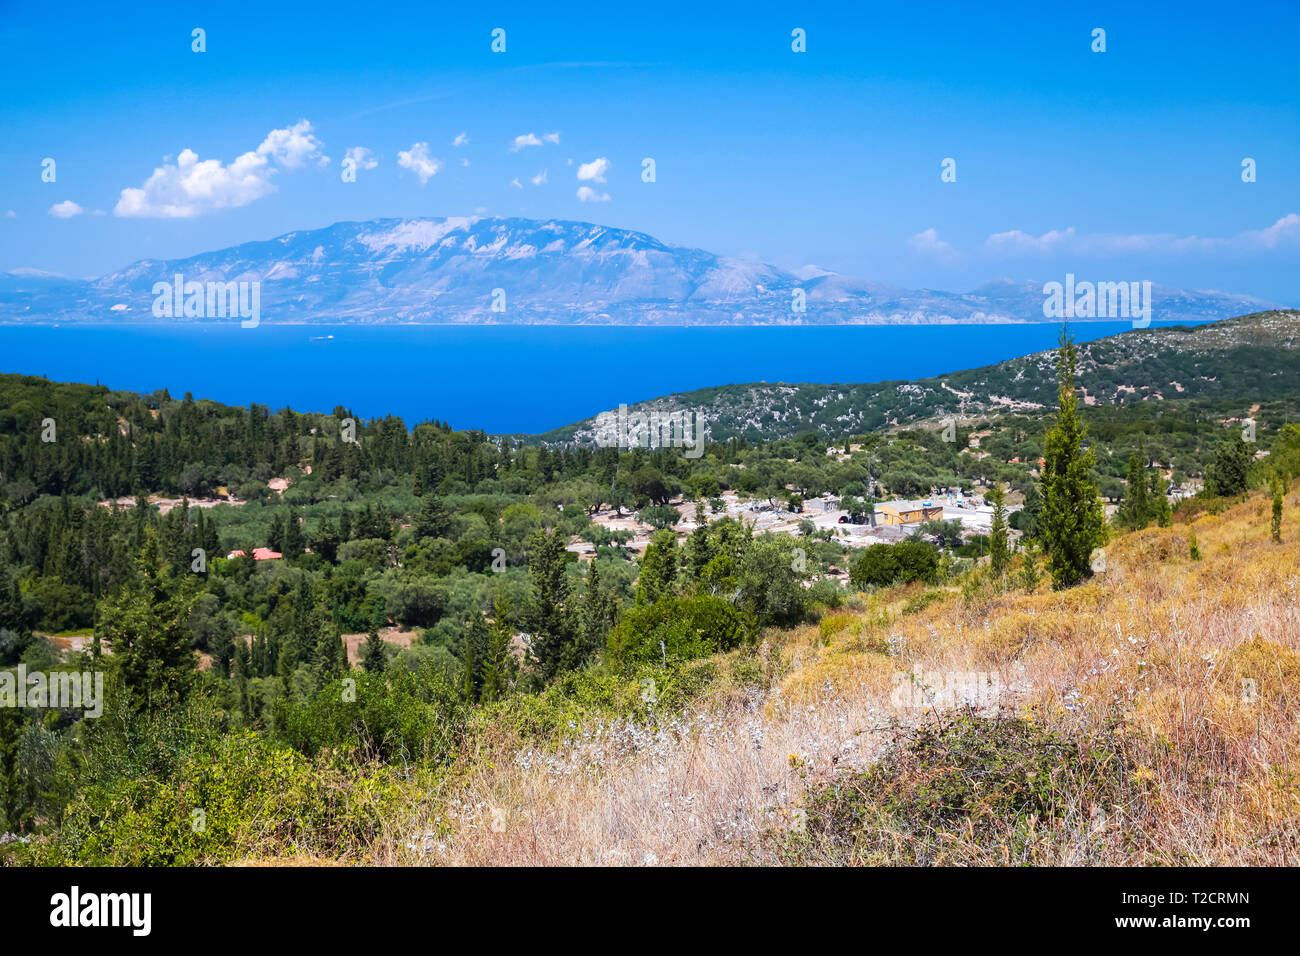 Paysage d'été côtières de Zakynthos, île grecque dans la mer Ionienne Banque D'Images